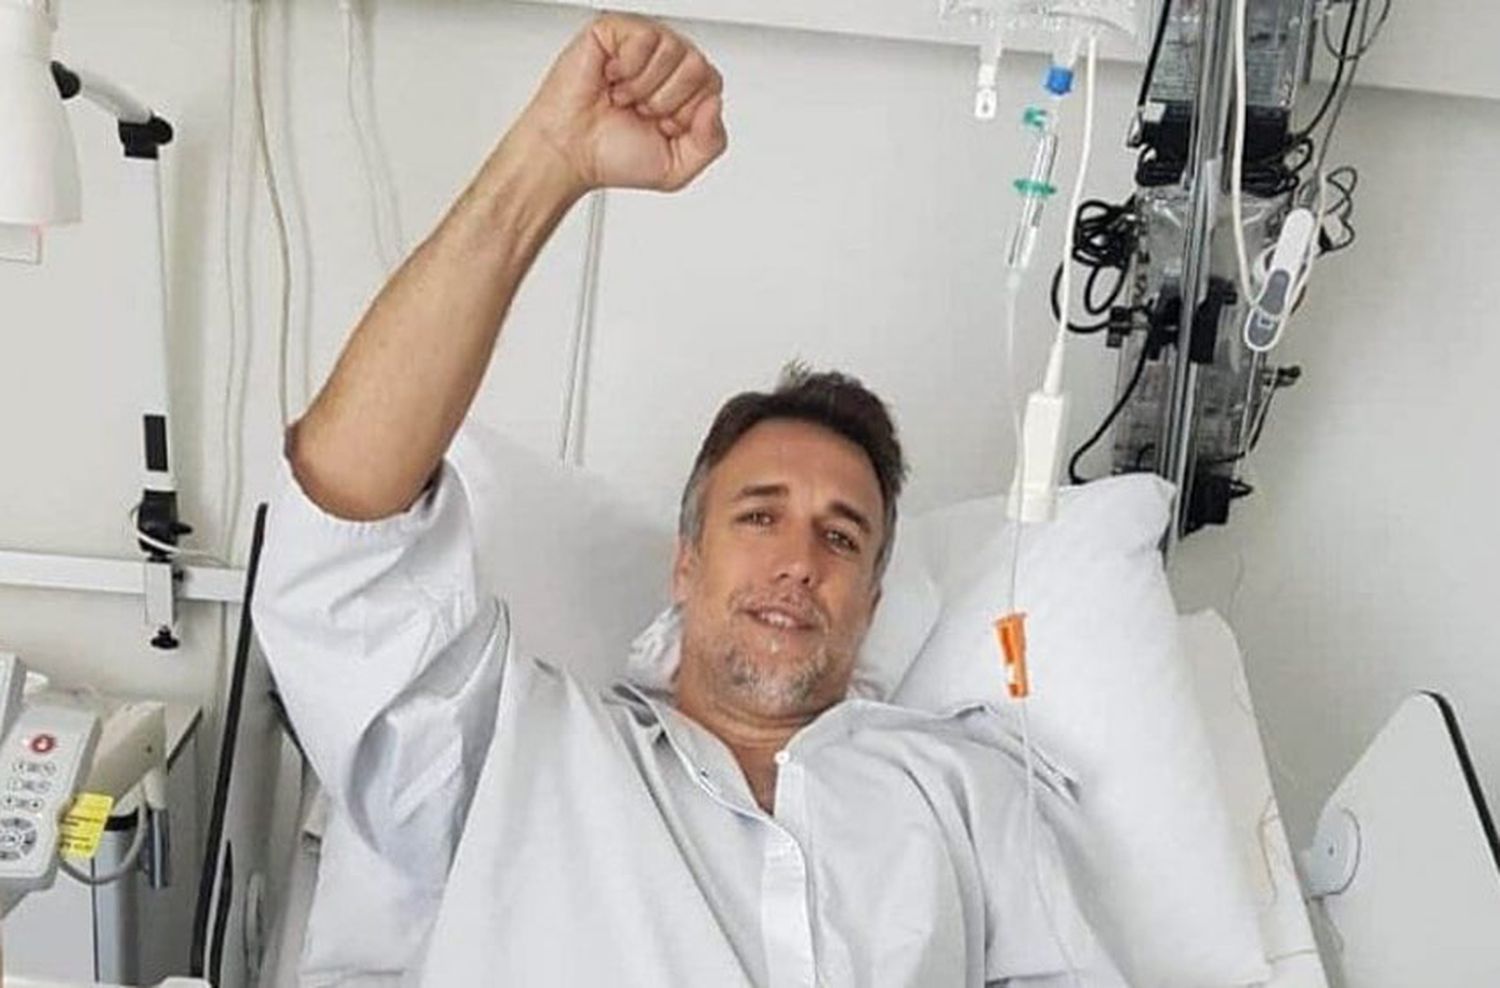 Batistuta superó con éxito la operación de tobillo y comienza la recuperación